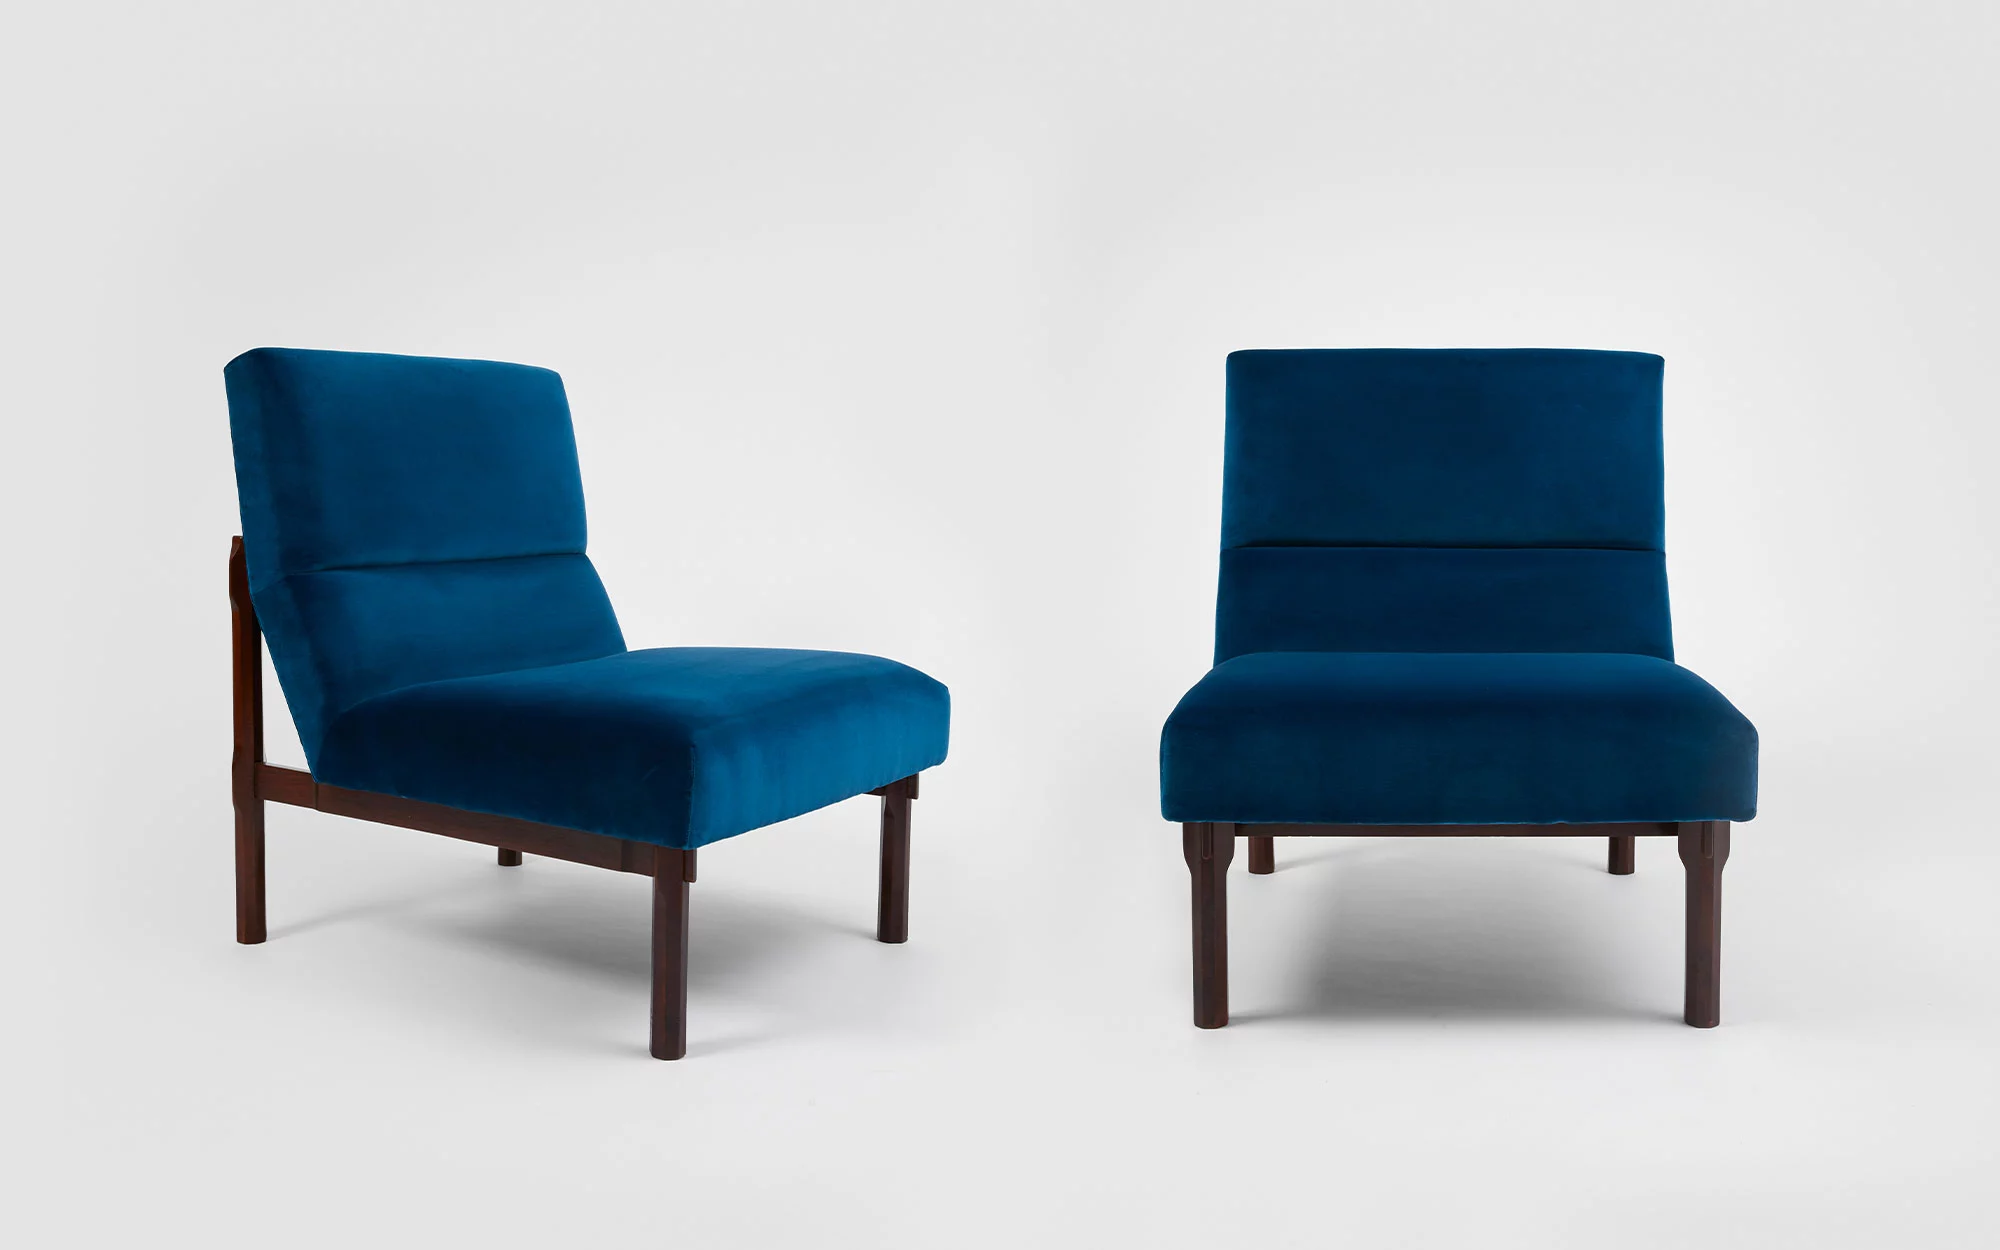 Armchair model n°869 - Ico & Luisa Parisi  - Coffee table - Galerie kreo